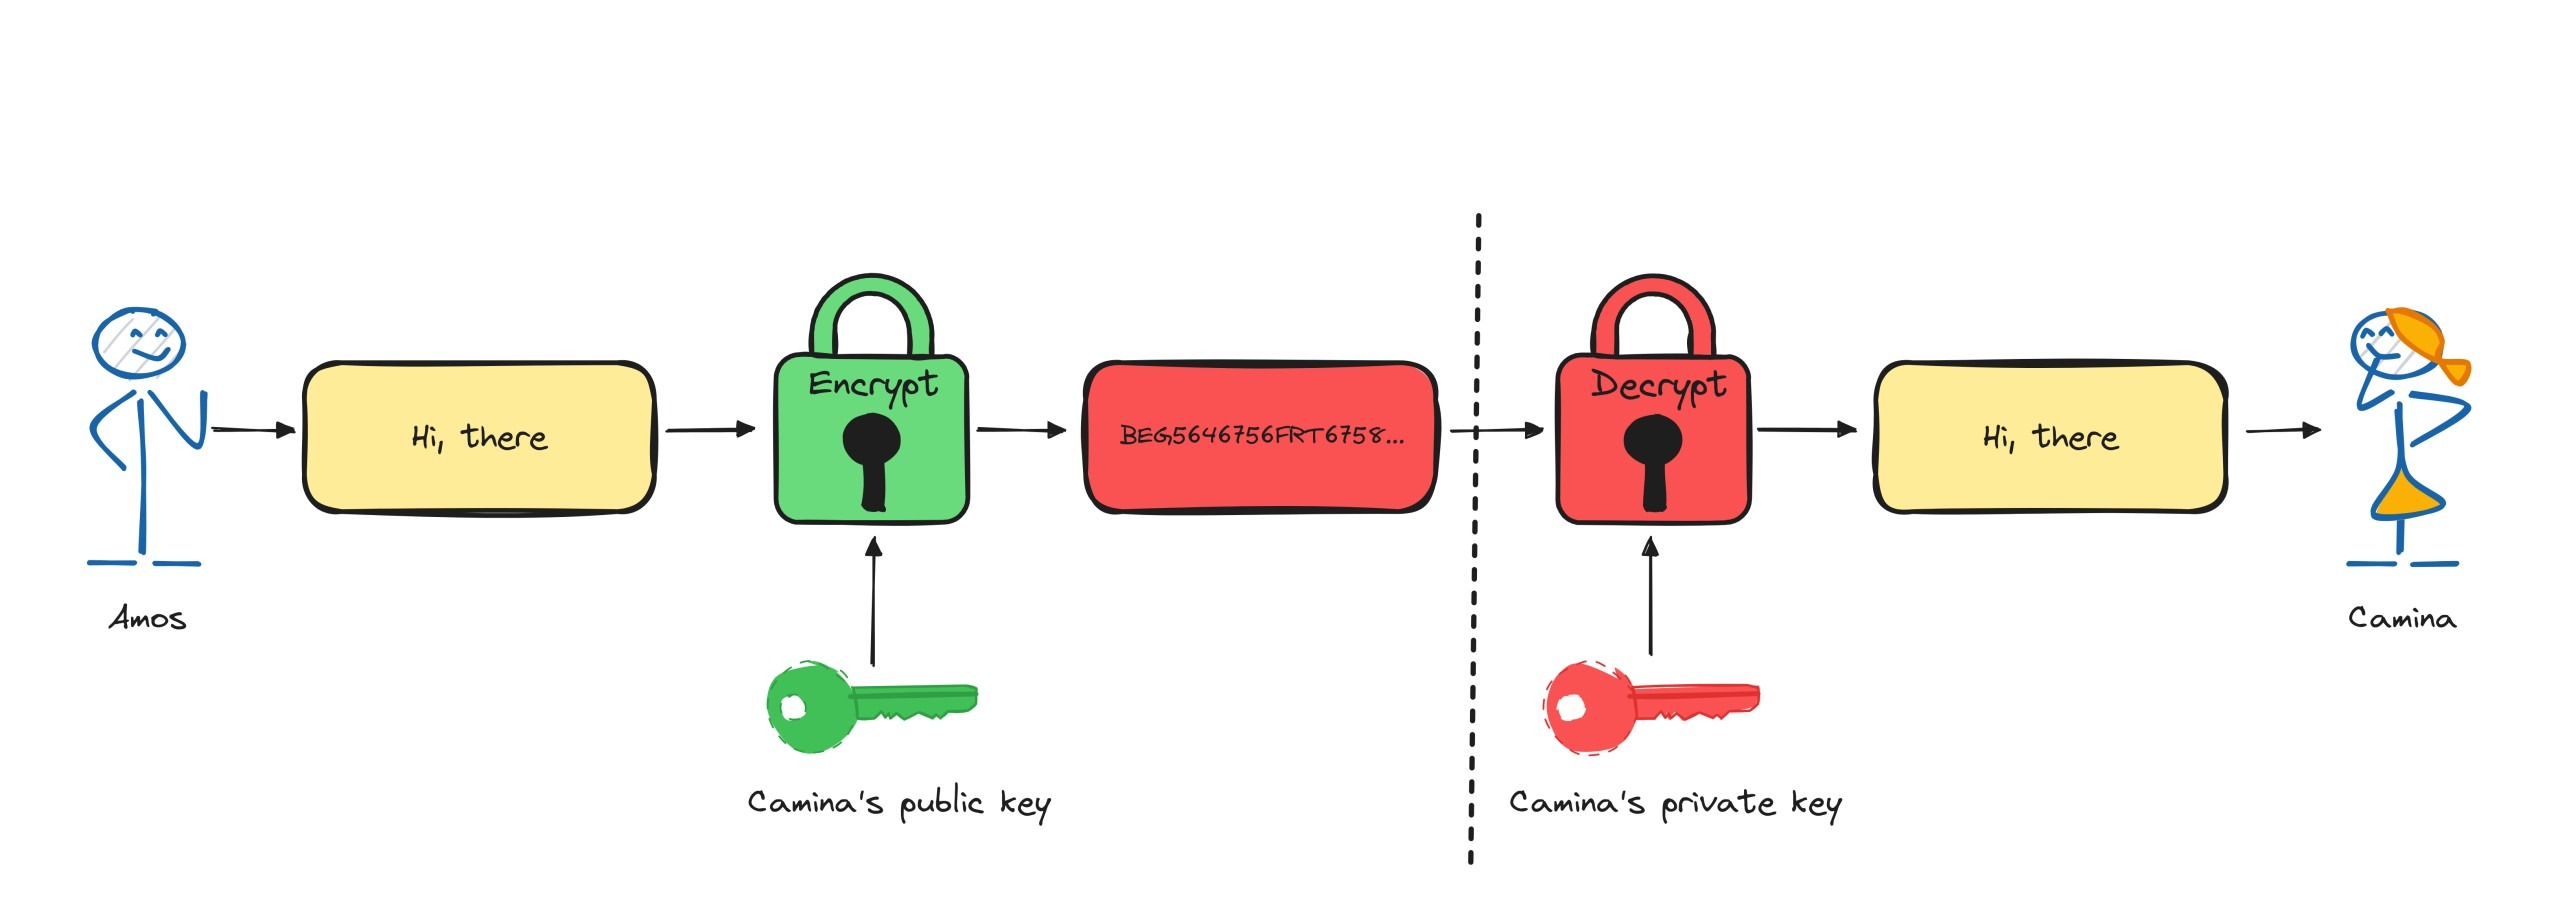 Encryption using Public-key cryptography